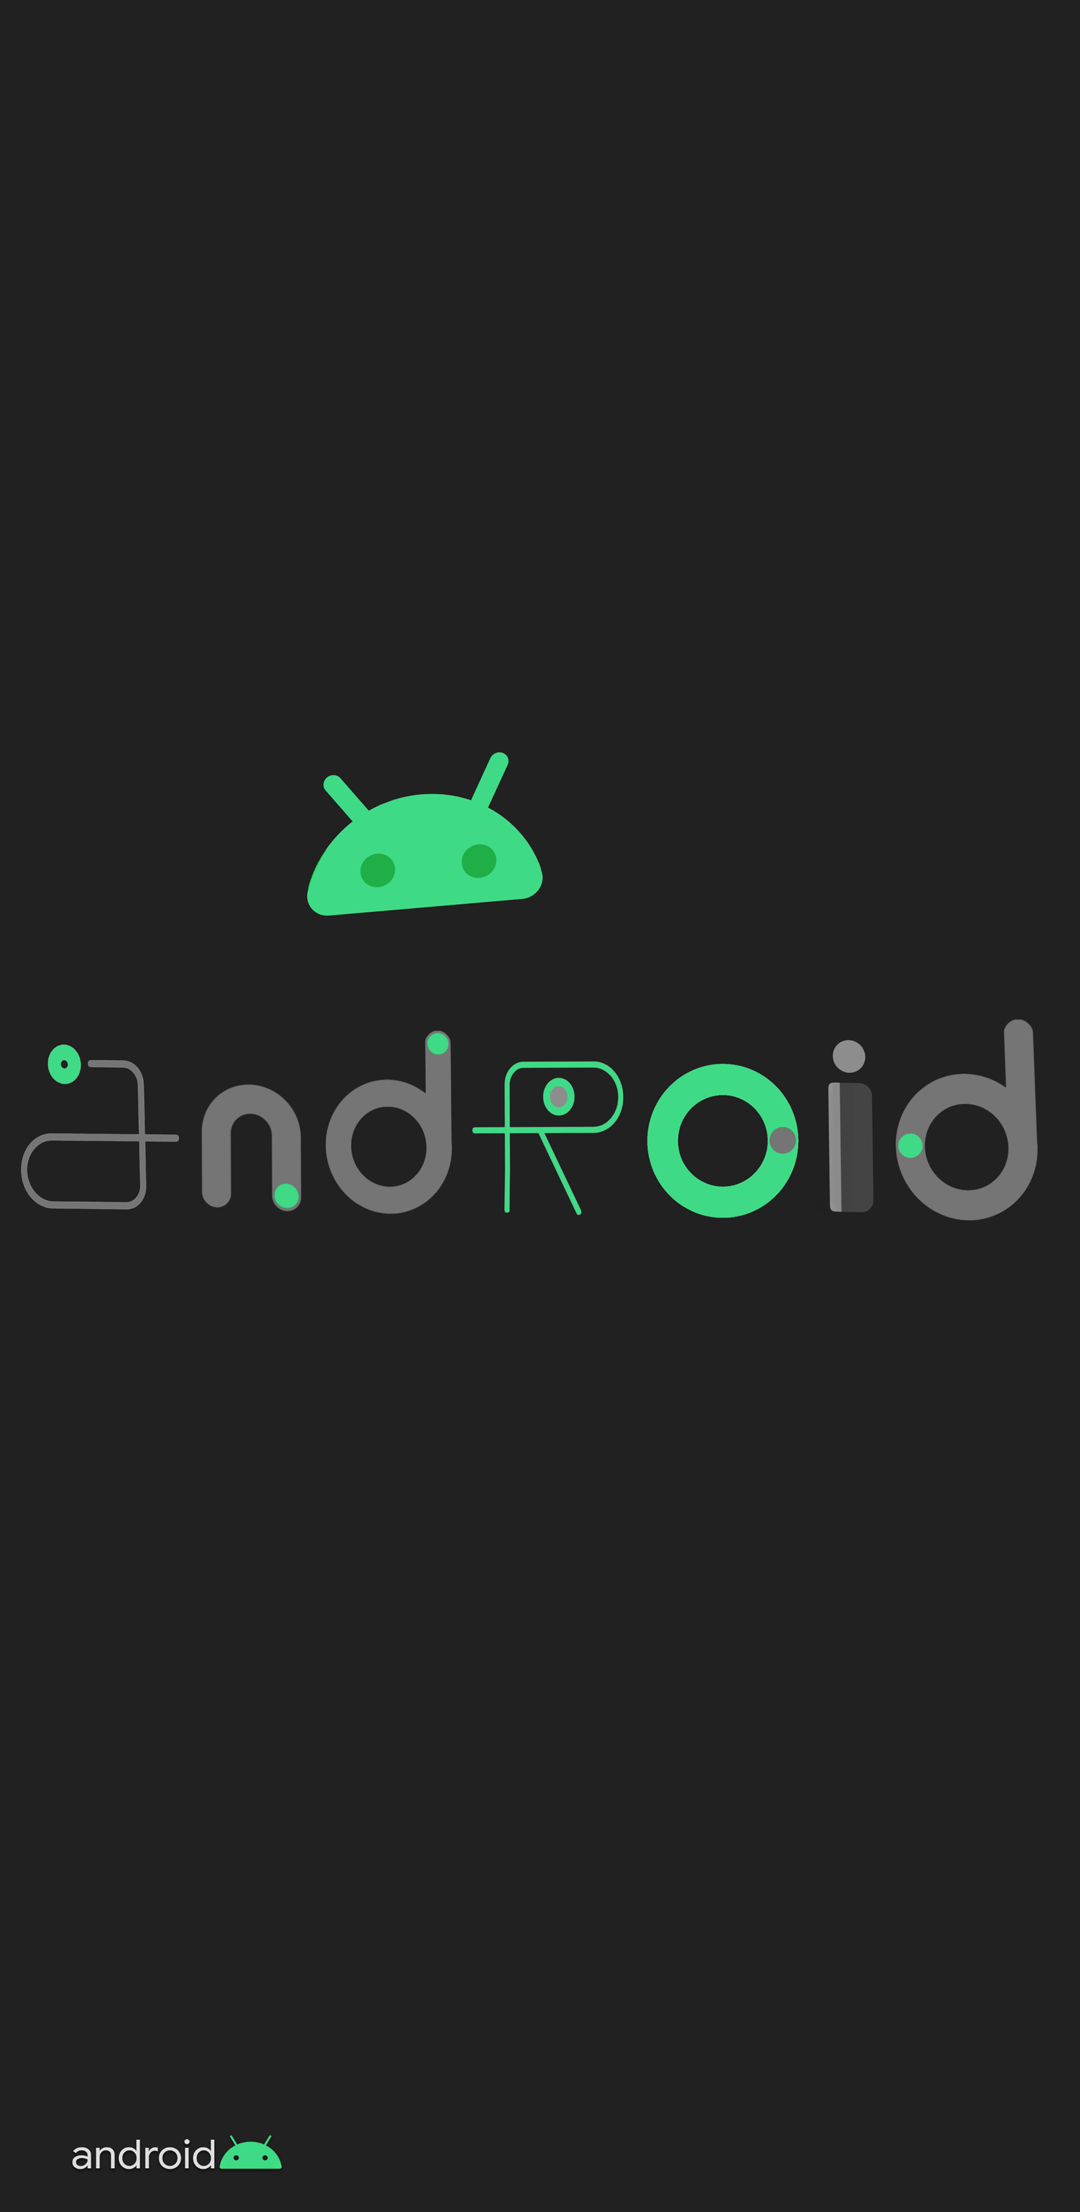 android wallpaper,grün,text,schriftart,grafik,technologie